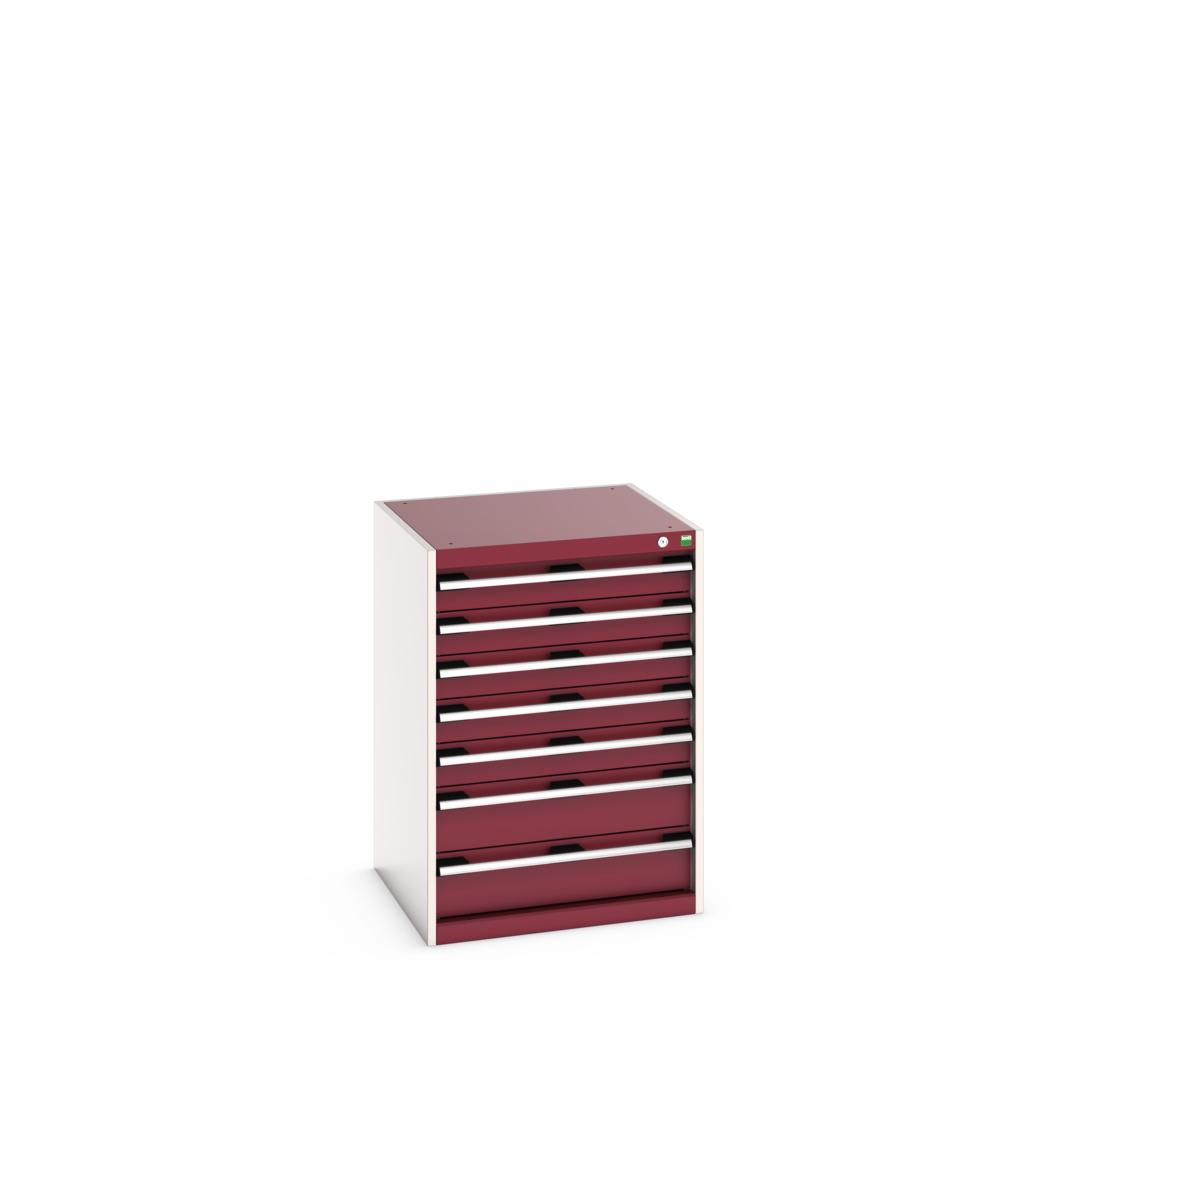 40019051.24V - cubio drawer cabinet